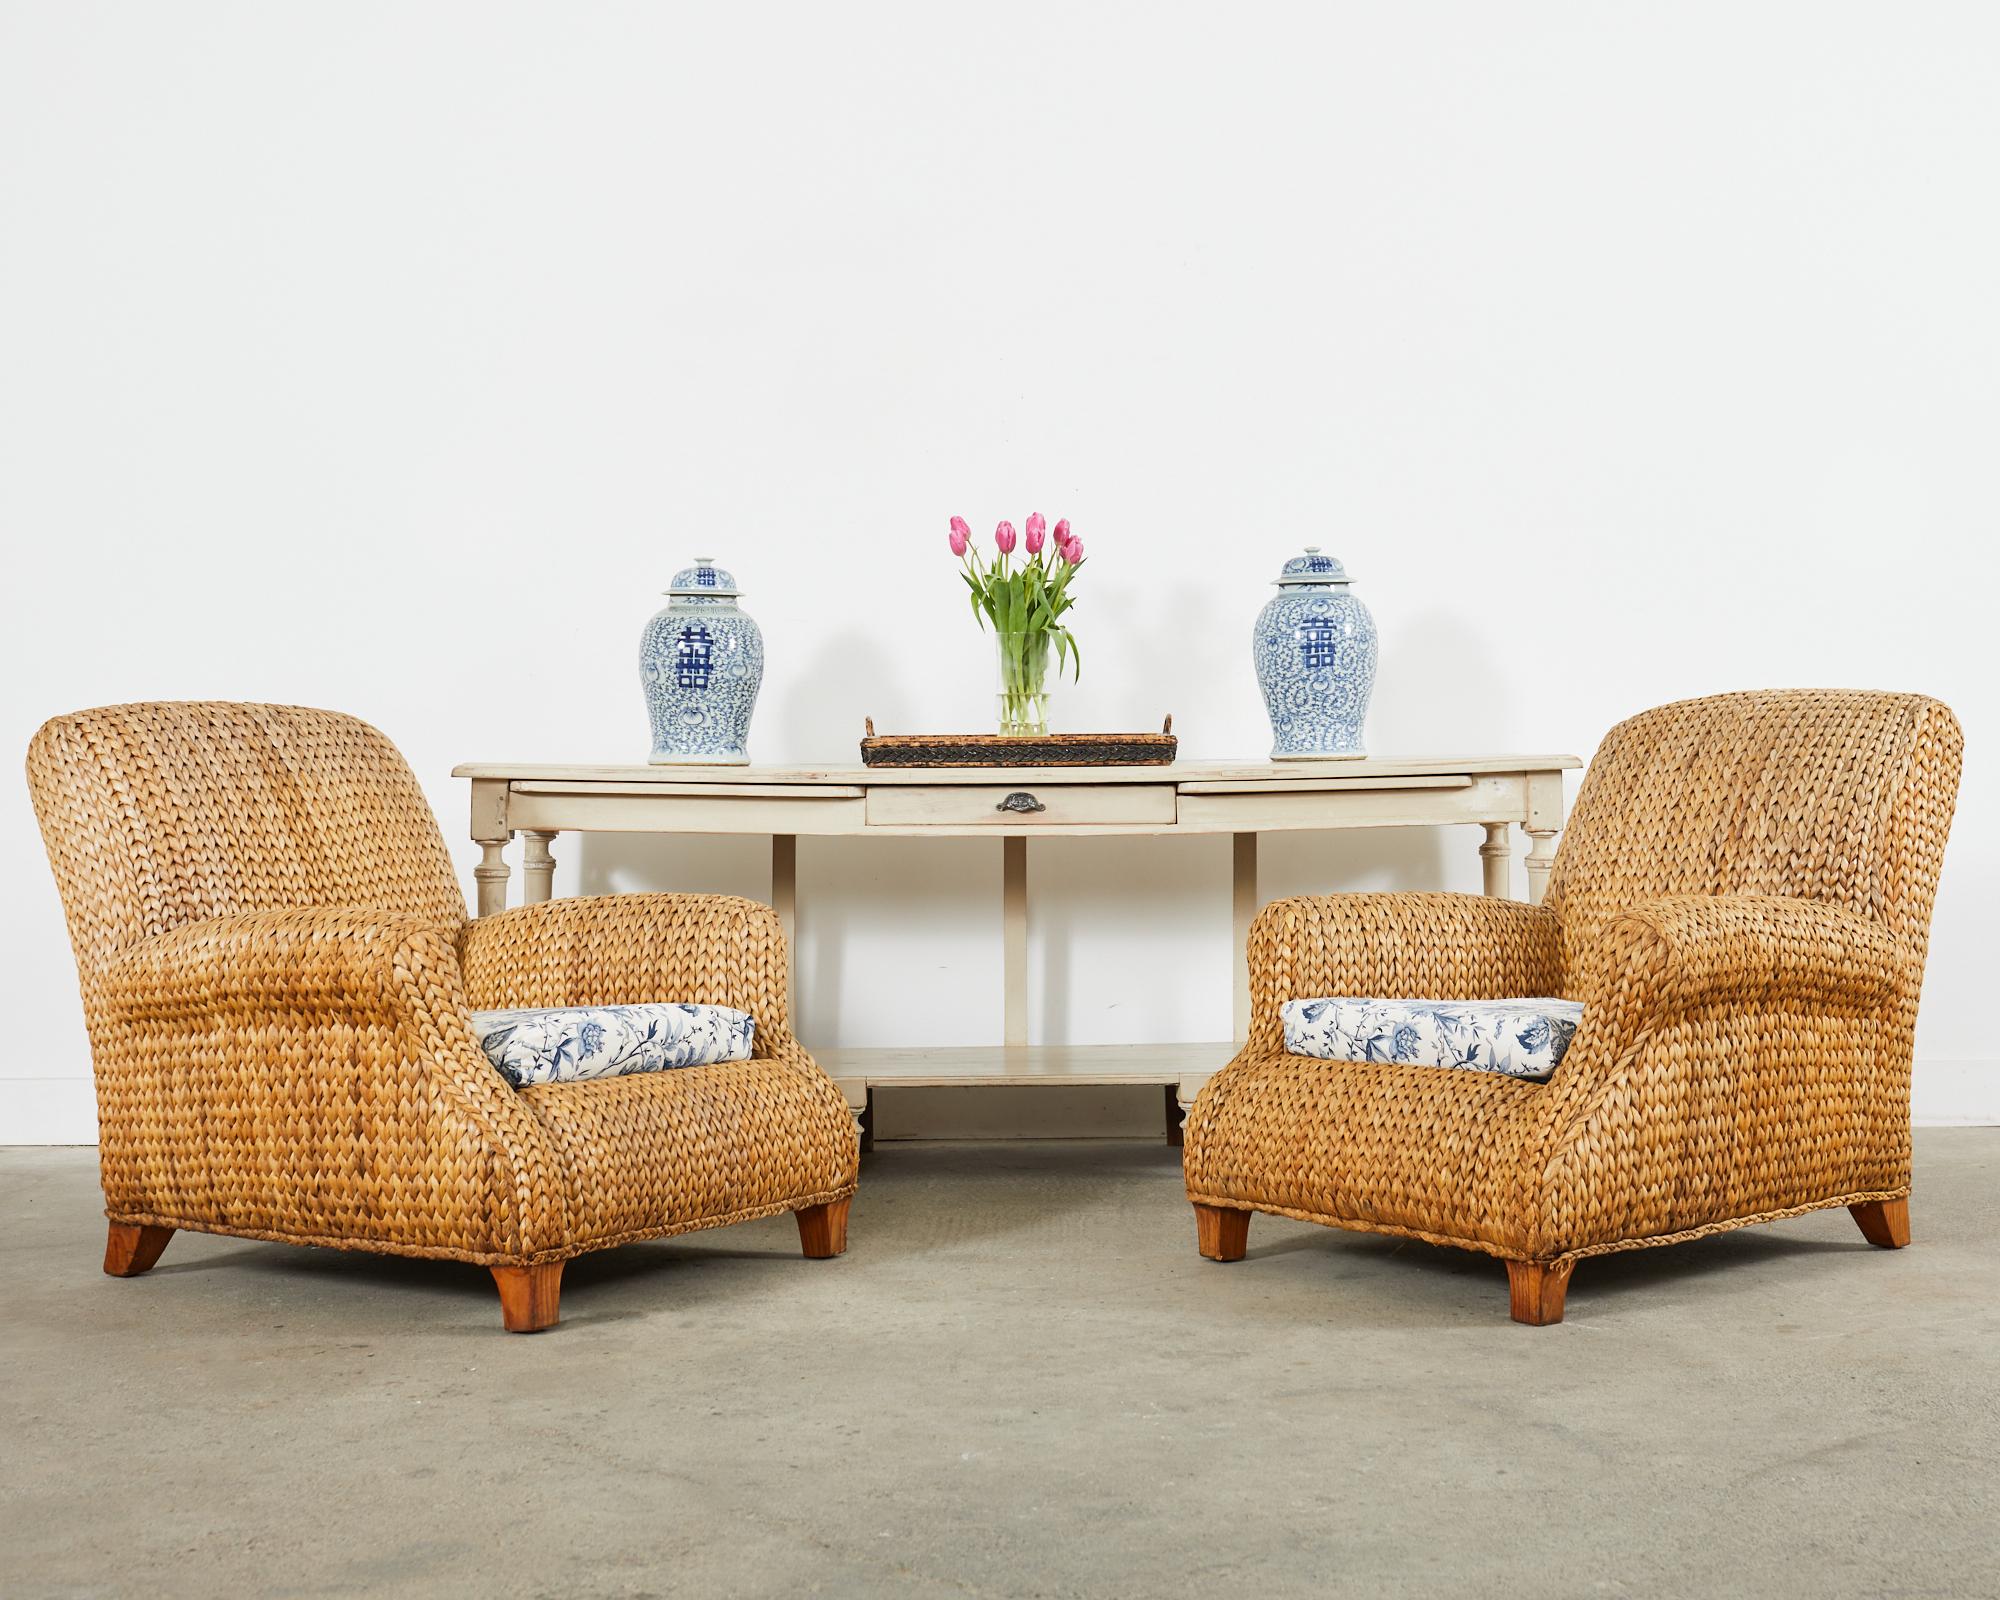 Rare paire de grandes chaises ou fauteuils de salon en rotin et gazon tressé, conçus par Ralph Lauren. Les chaises sont dotées de cadres en rotin surdimensionnés agrémentés d'herbes marines naturelles tressées dans le style moderne organique côtier.